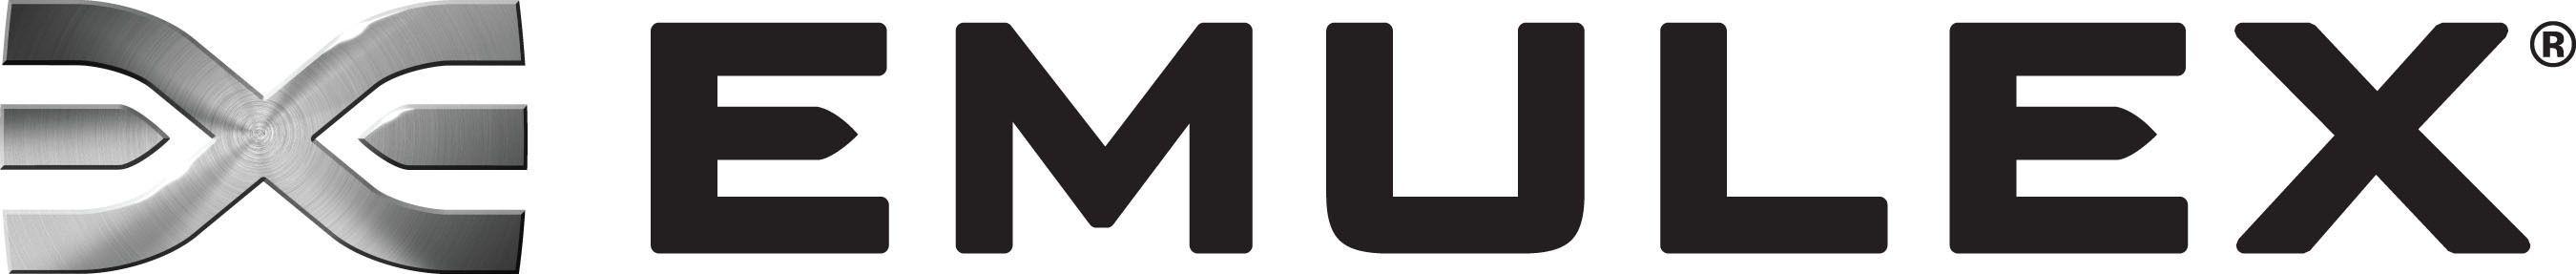 Emulex Logo - Emulex Announces Third Quarter Financial Results